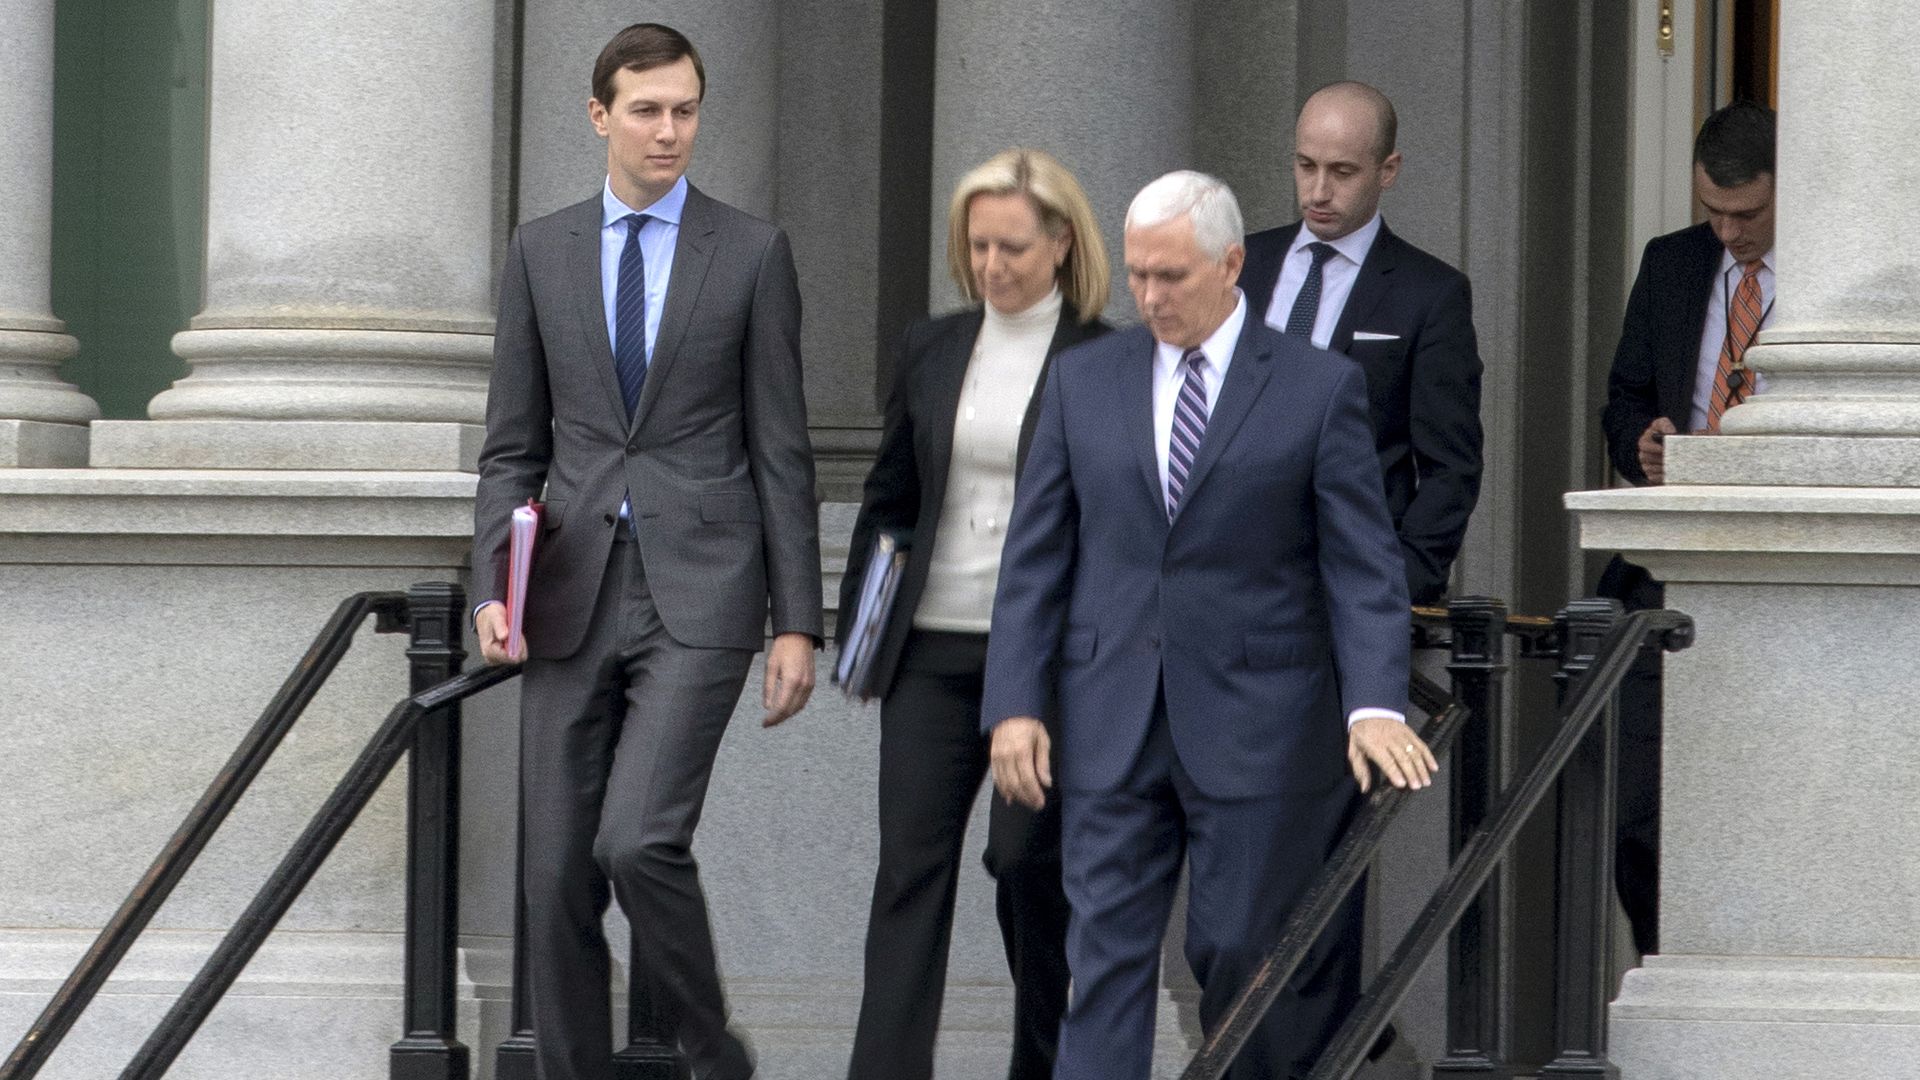 Jared Kushner, Kirstjen Nielsen, Mike Pence, and Stephen Miller exit the Eisenhower Executive Office Building 